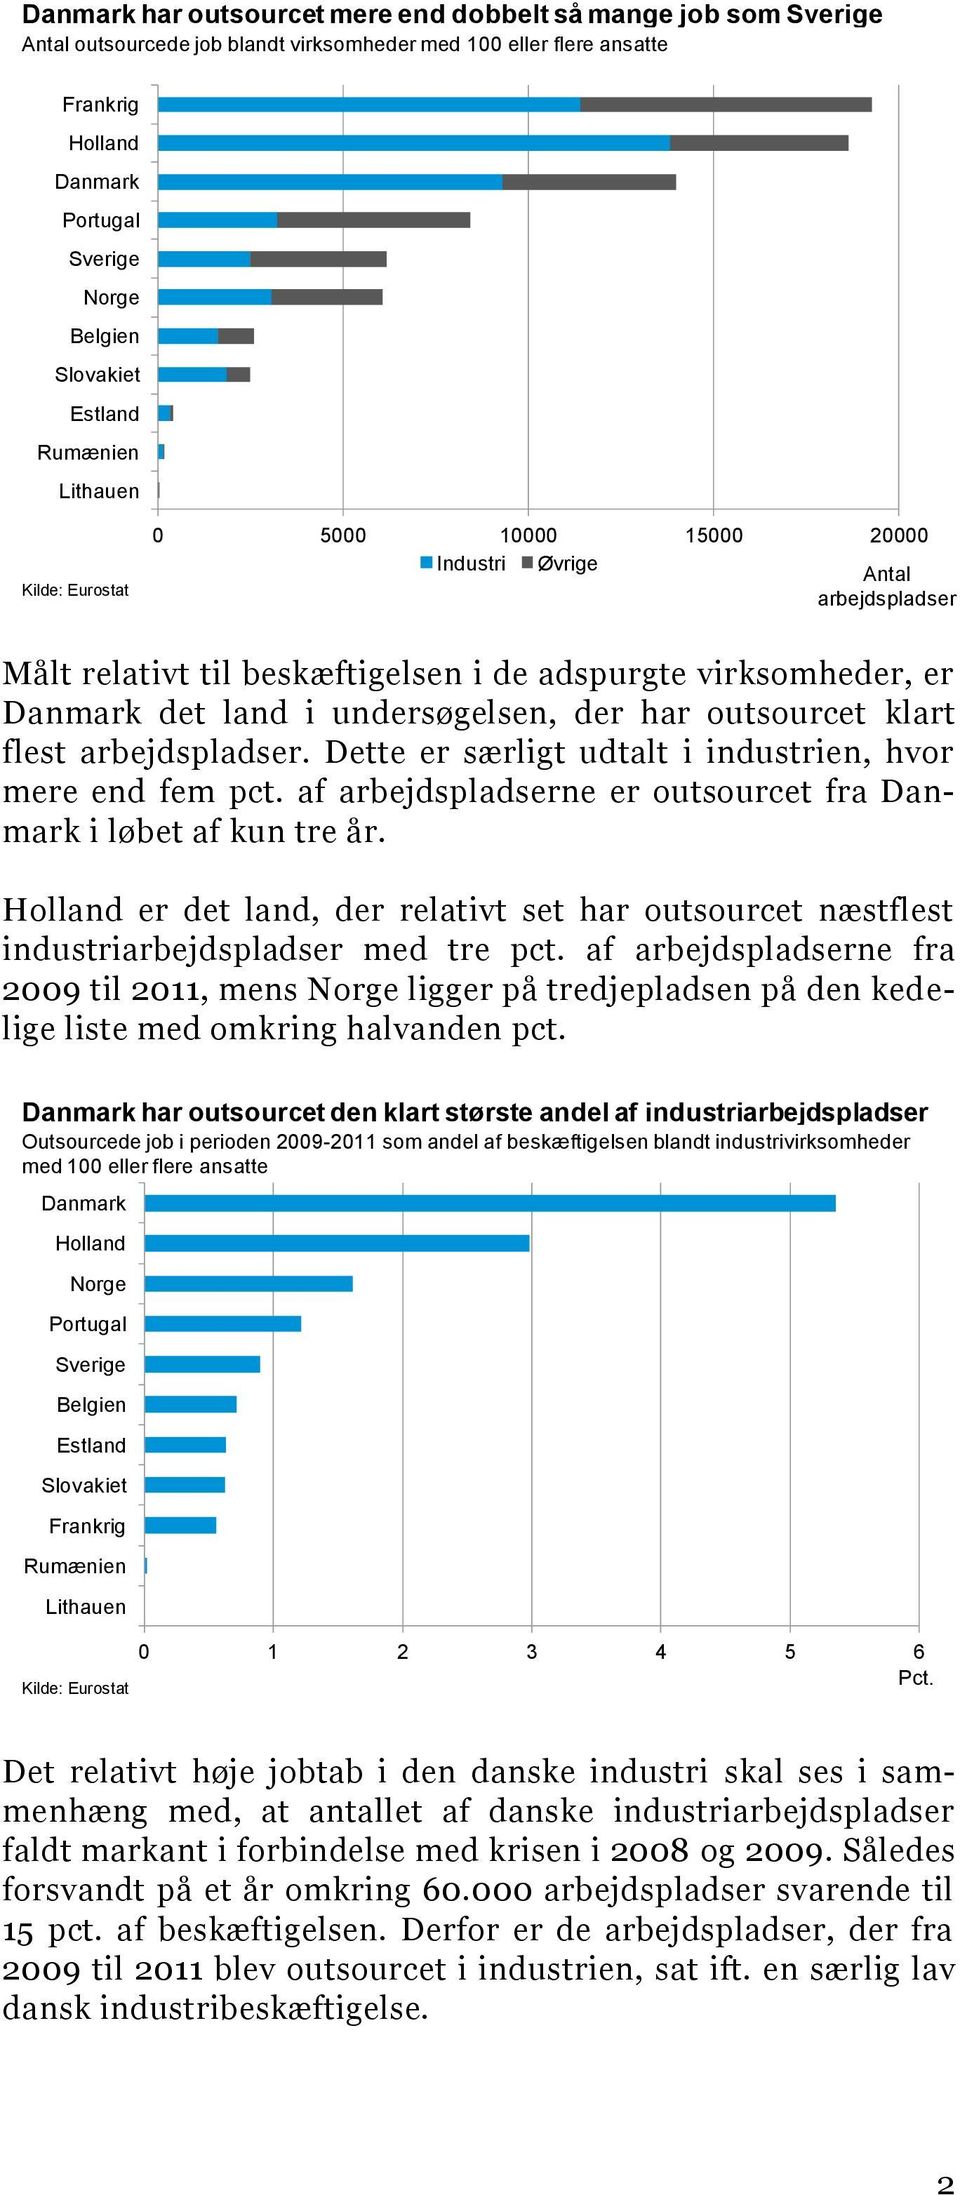 flest arbejdspladser. Dette er særligt udtalt i industrien, hvor mere end fem pct. af arbejdspladserne er outsourcet fra Danmark i løbet af kun tre år.